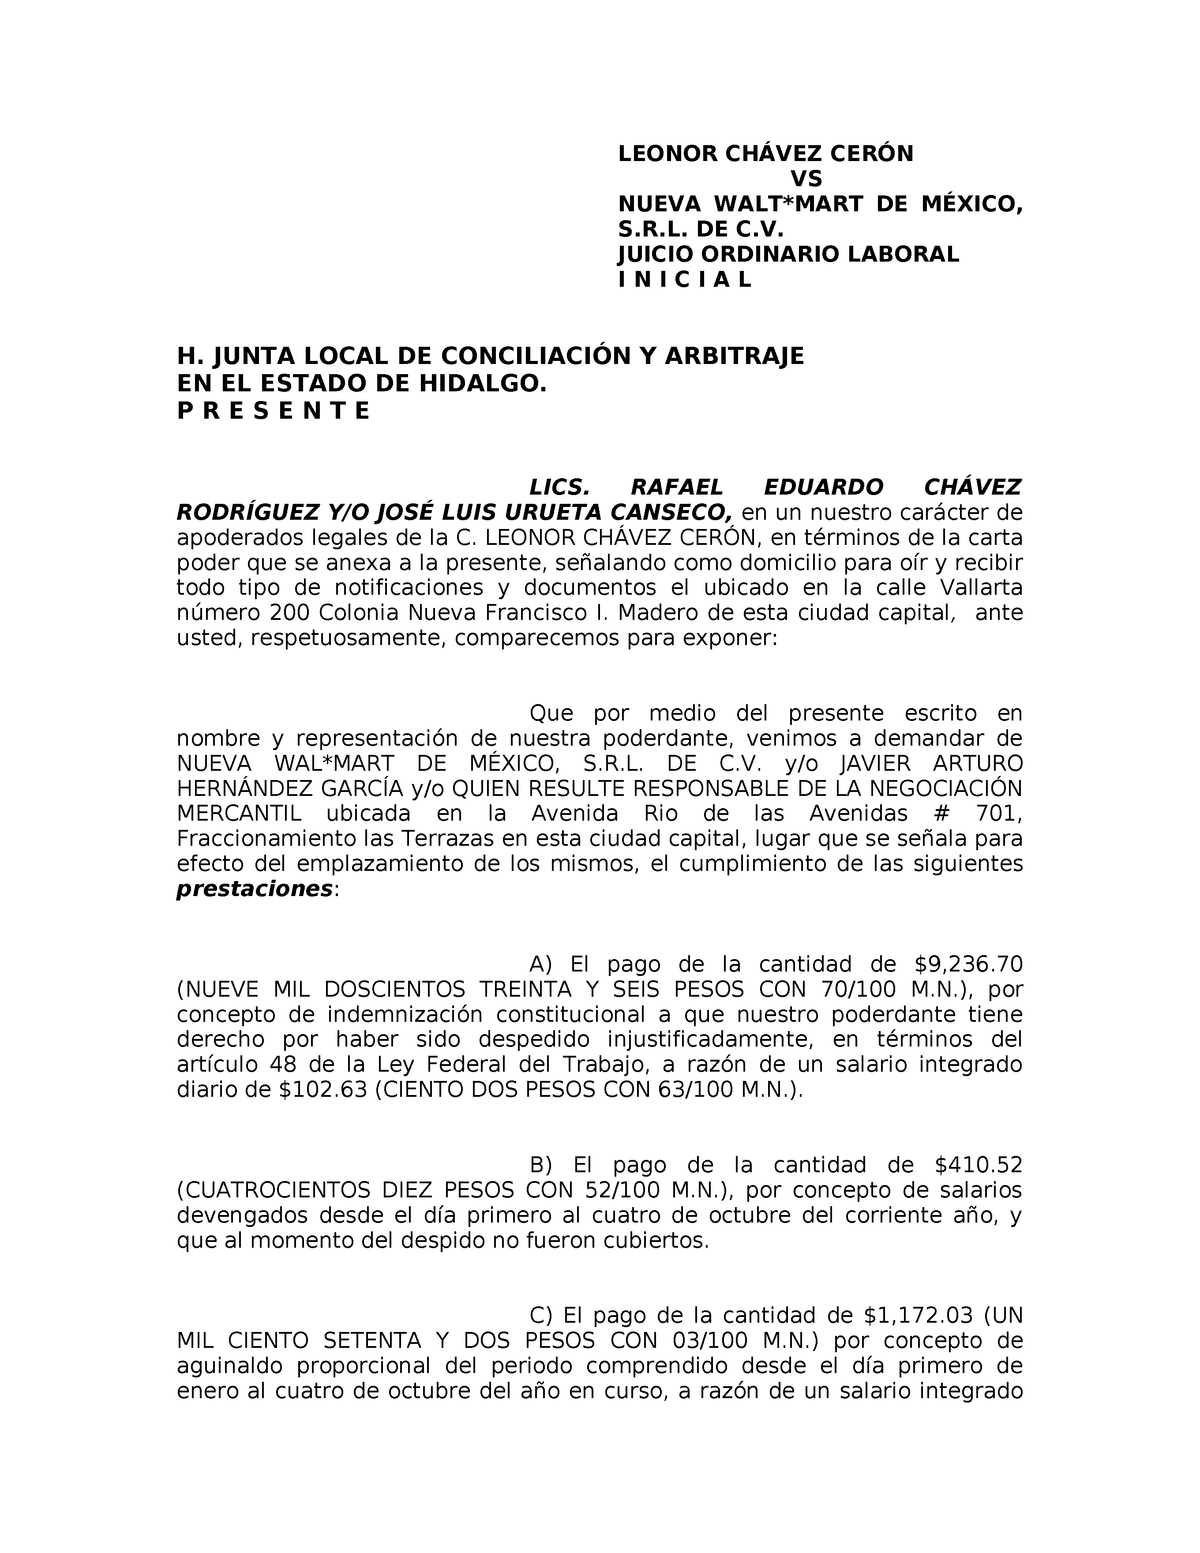 Formato-demanda-laboral - LEONOR CHÁVEZ CERÓN VS NUEVA WALT*MART DE MÉXICO,  . DE C. JUICIO - Studocu